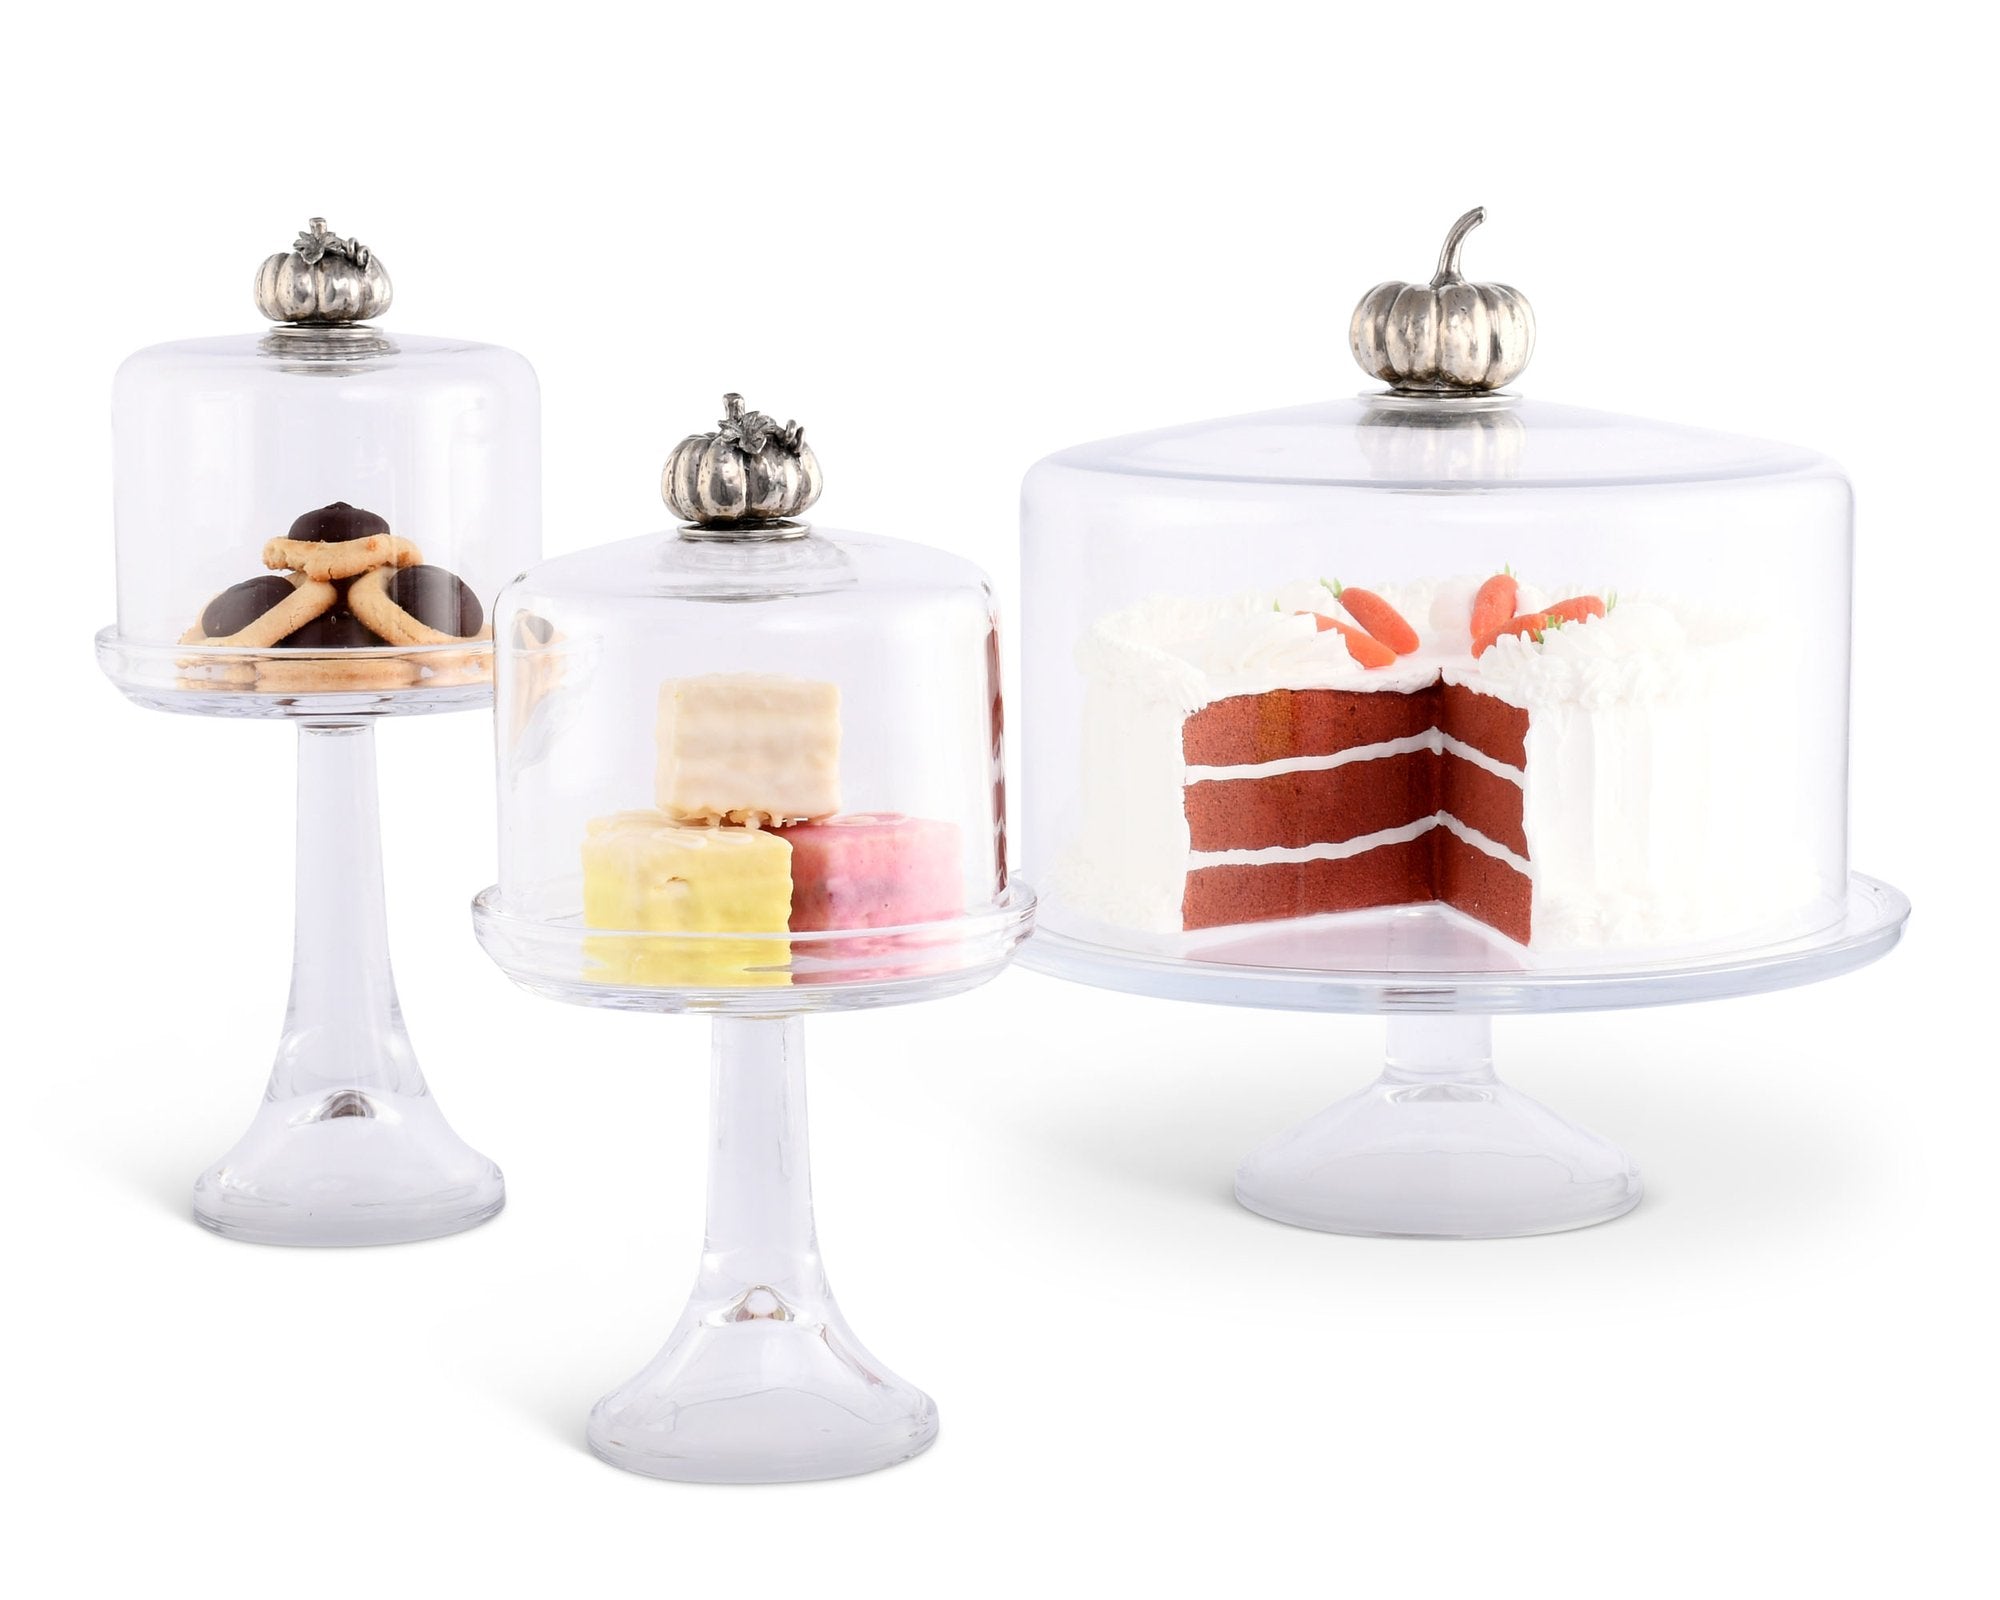 Pumpkin Knob Glass Covered Cake / Dessert Stand